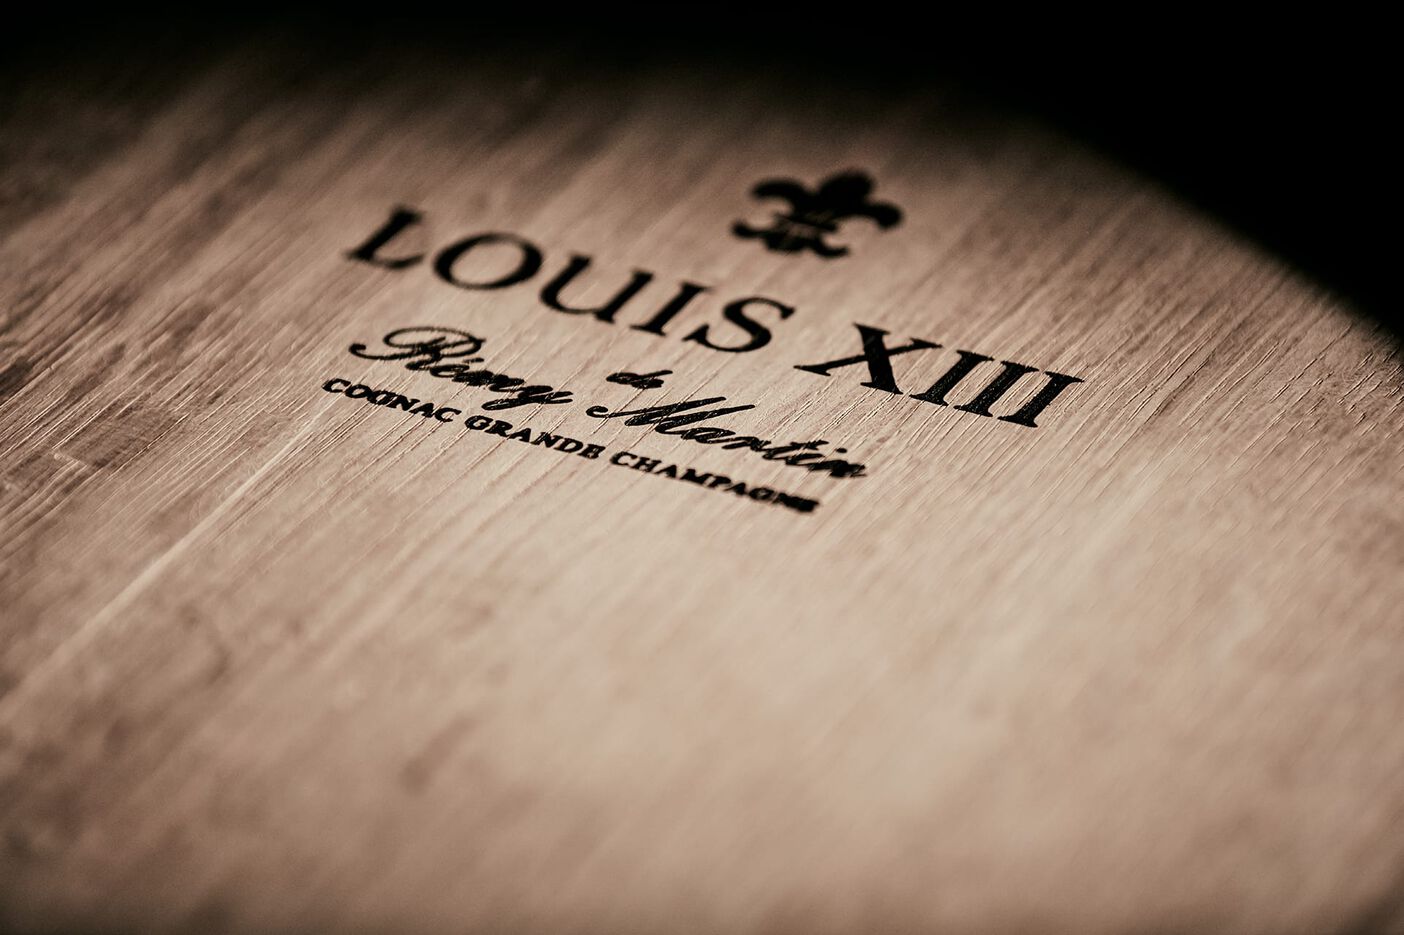 LOUIS XIII – Rémy Cointreau